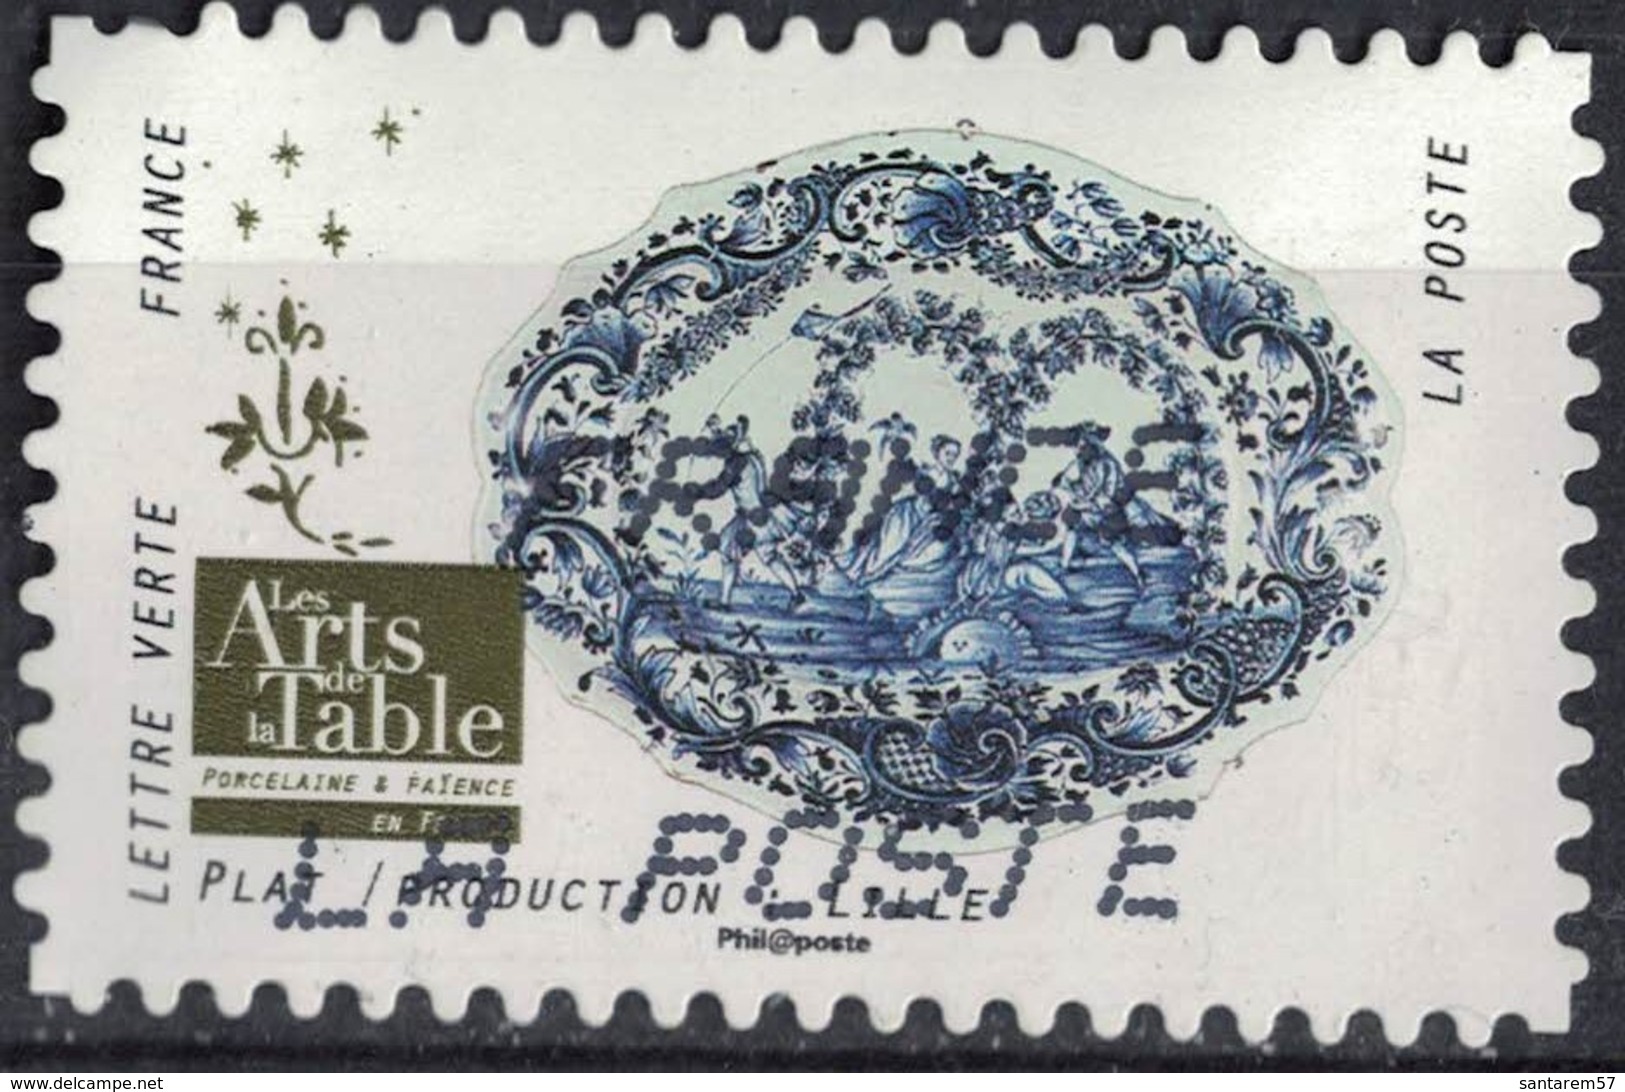 France 2018 Oblitéré Used Arts De La Table Porcelaine Et Faïence Plat Production Lille Y&T 1529 SU - Oblitérés